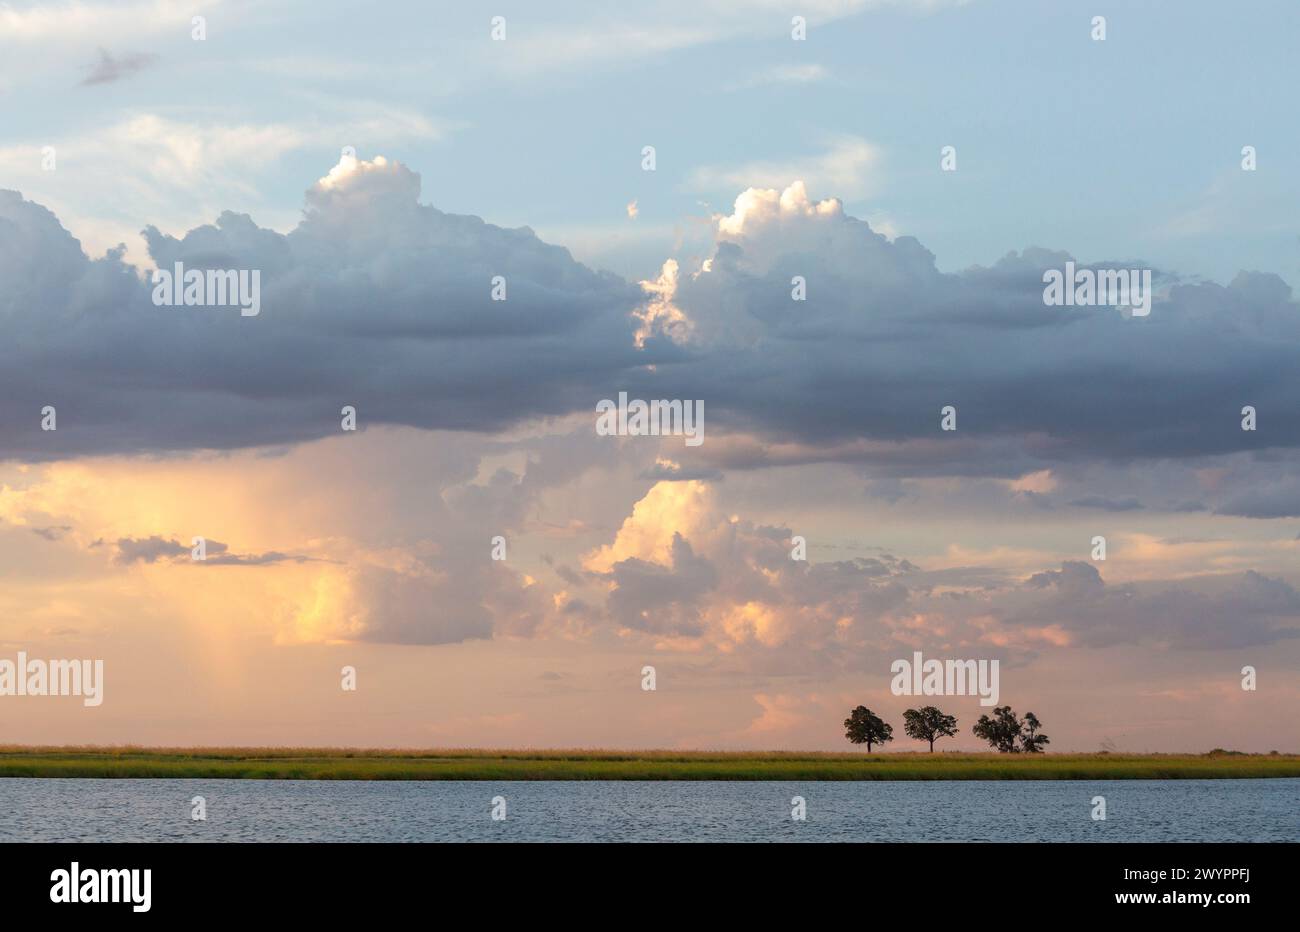 Trois arbres isolés sur une île de la rivière Chobe exposés à faible débit contre un ciel d'été sombre Banque D'Images